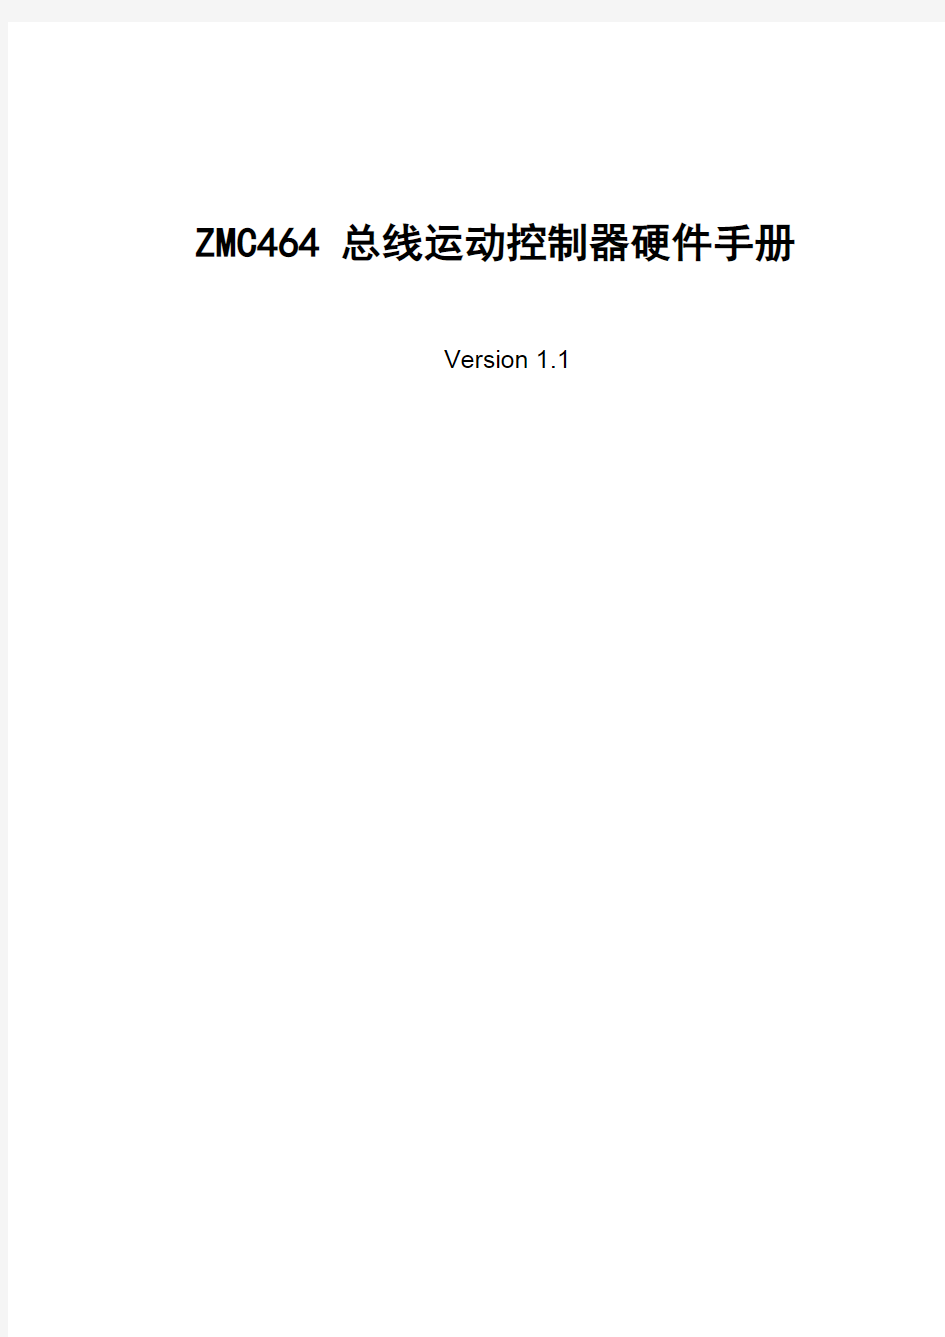 ZMC464控制器硬件手册